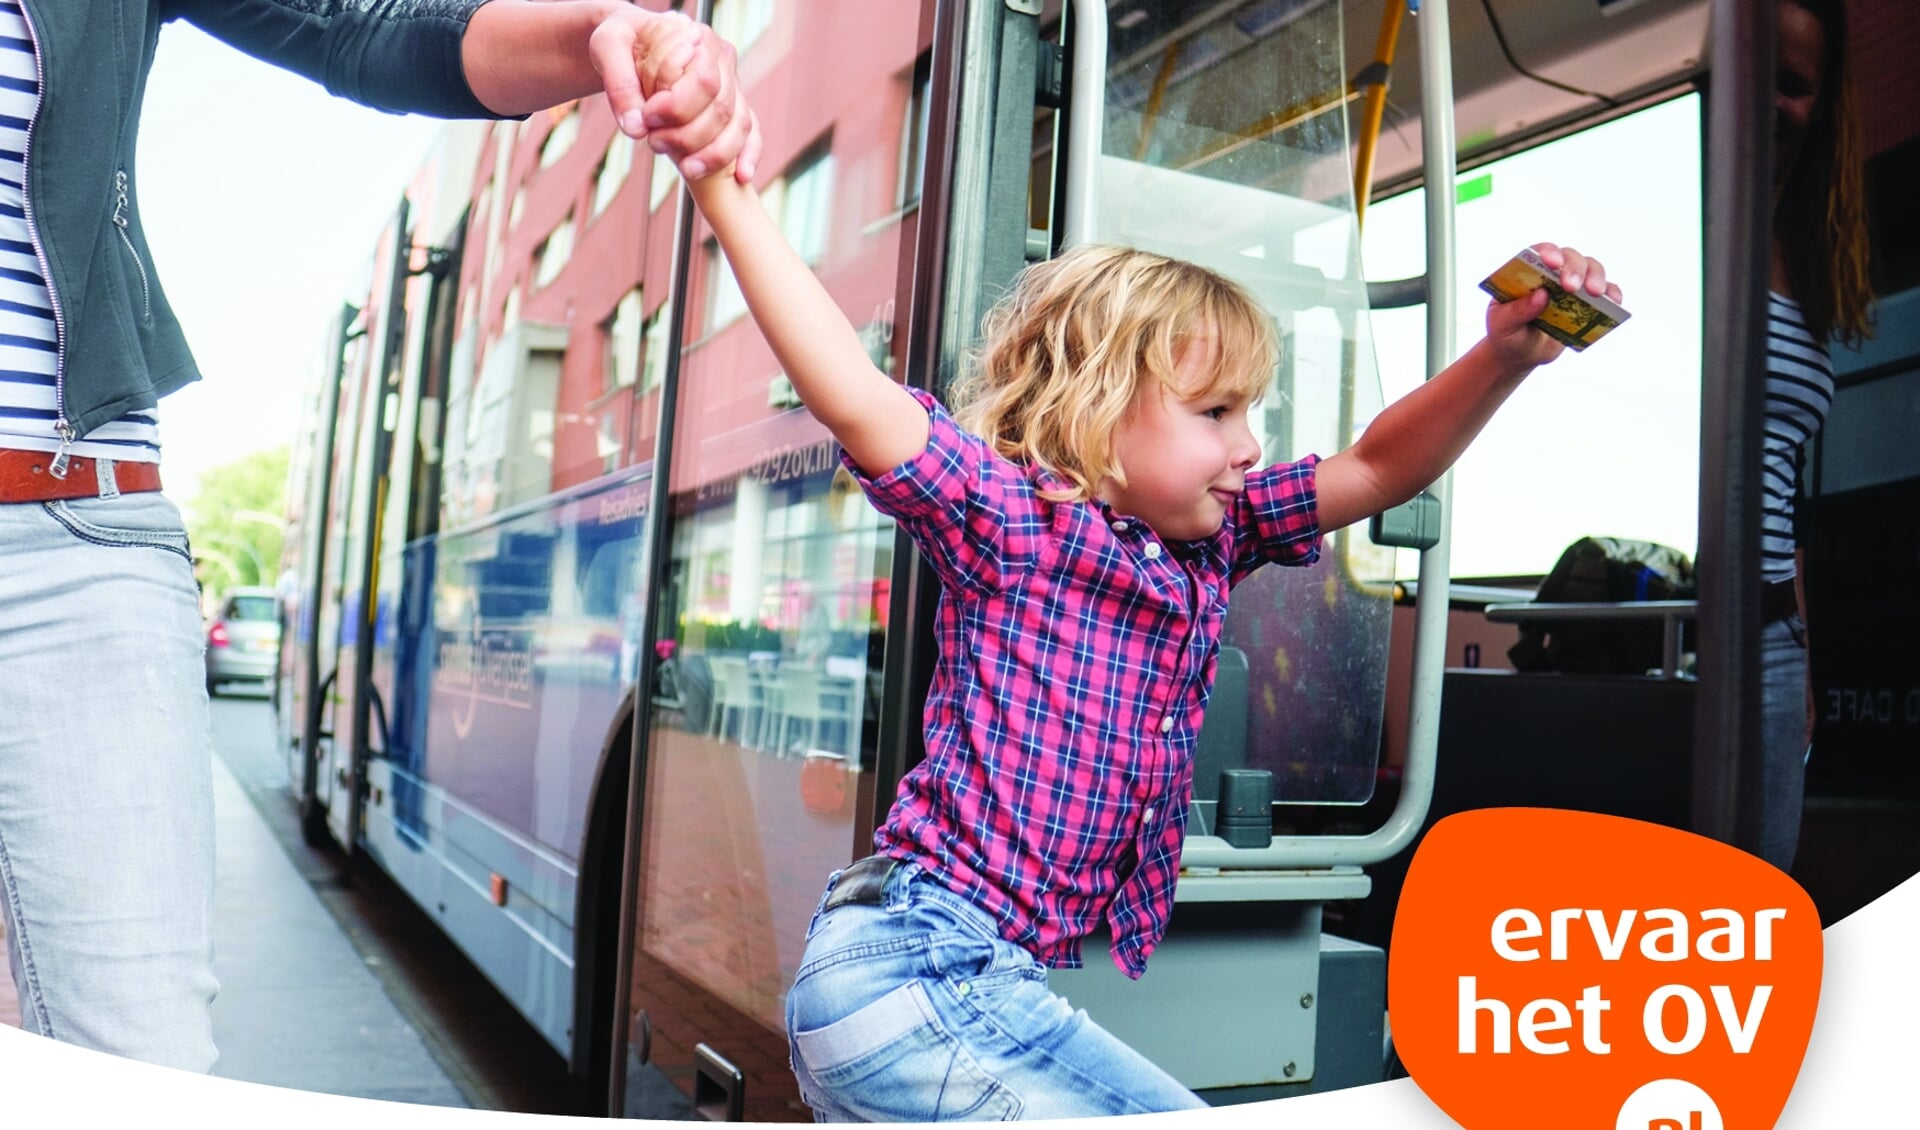 Verbeteren bibliothecaris muur Kinderen reizen in oktober gratis met bus en regionale trein - Al het  nieuws uit Kampen, IJsselmuiden e.o.